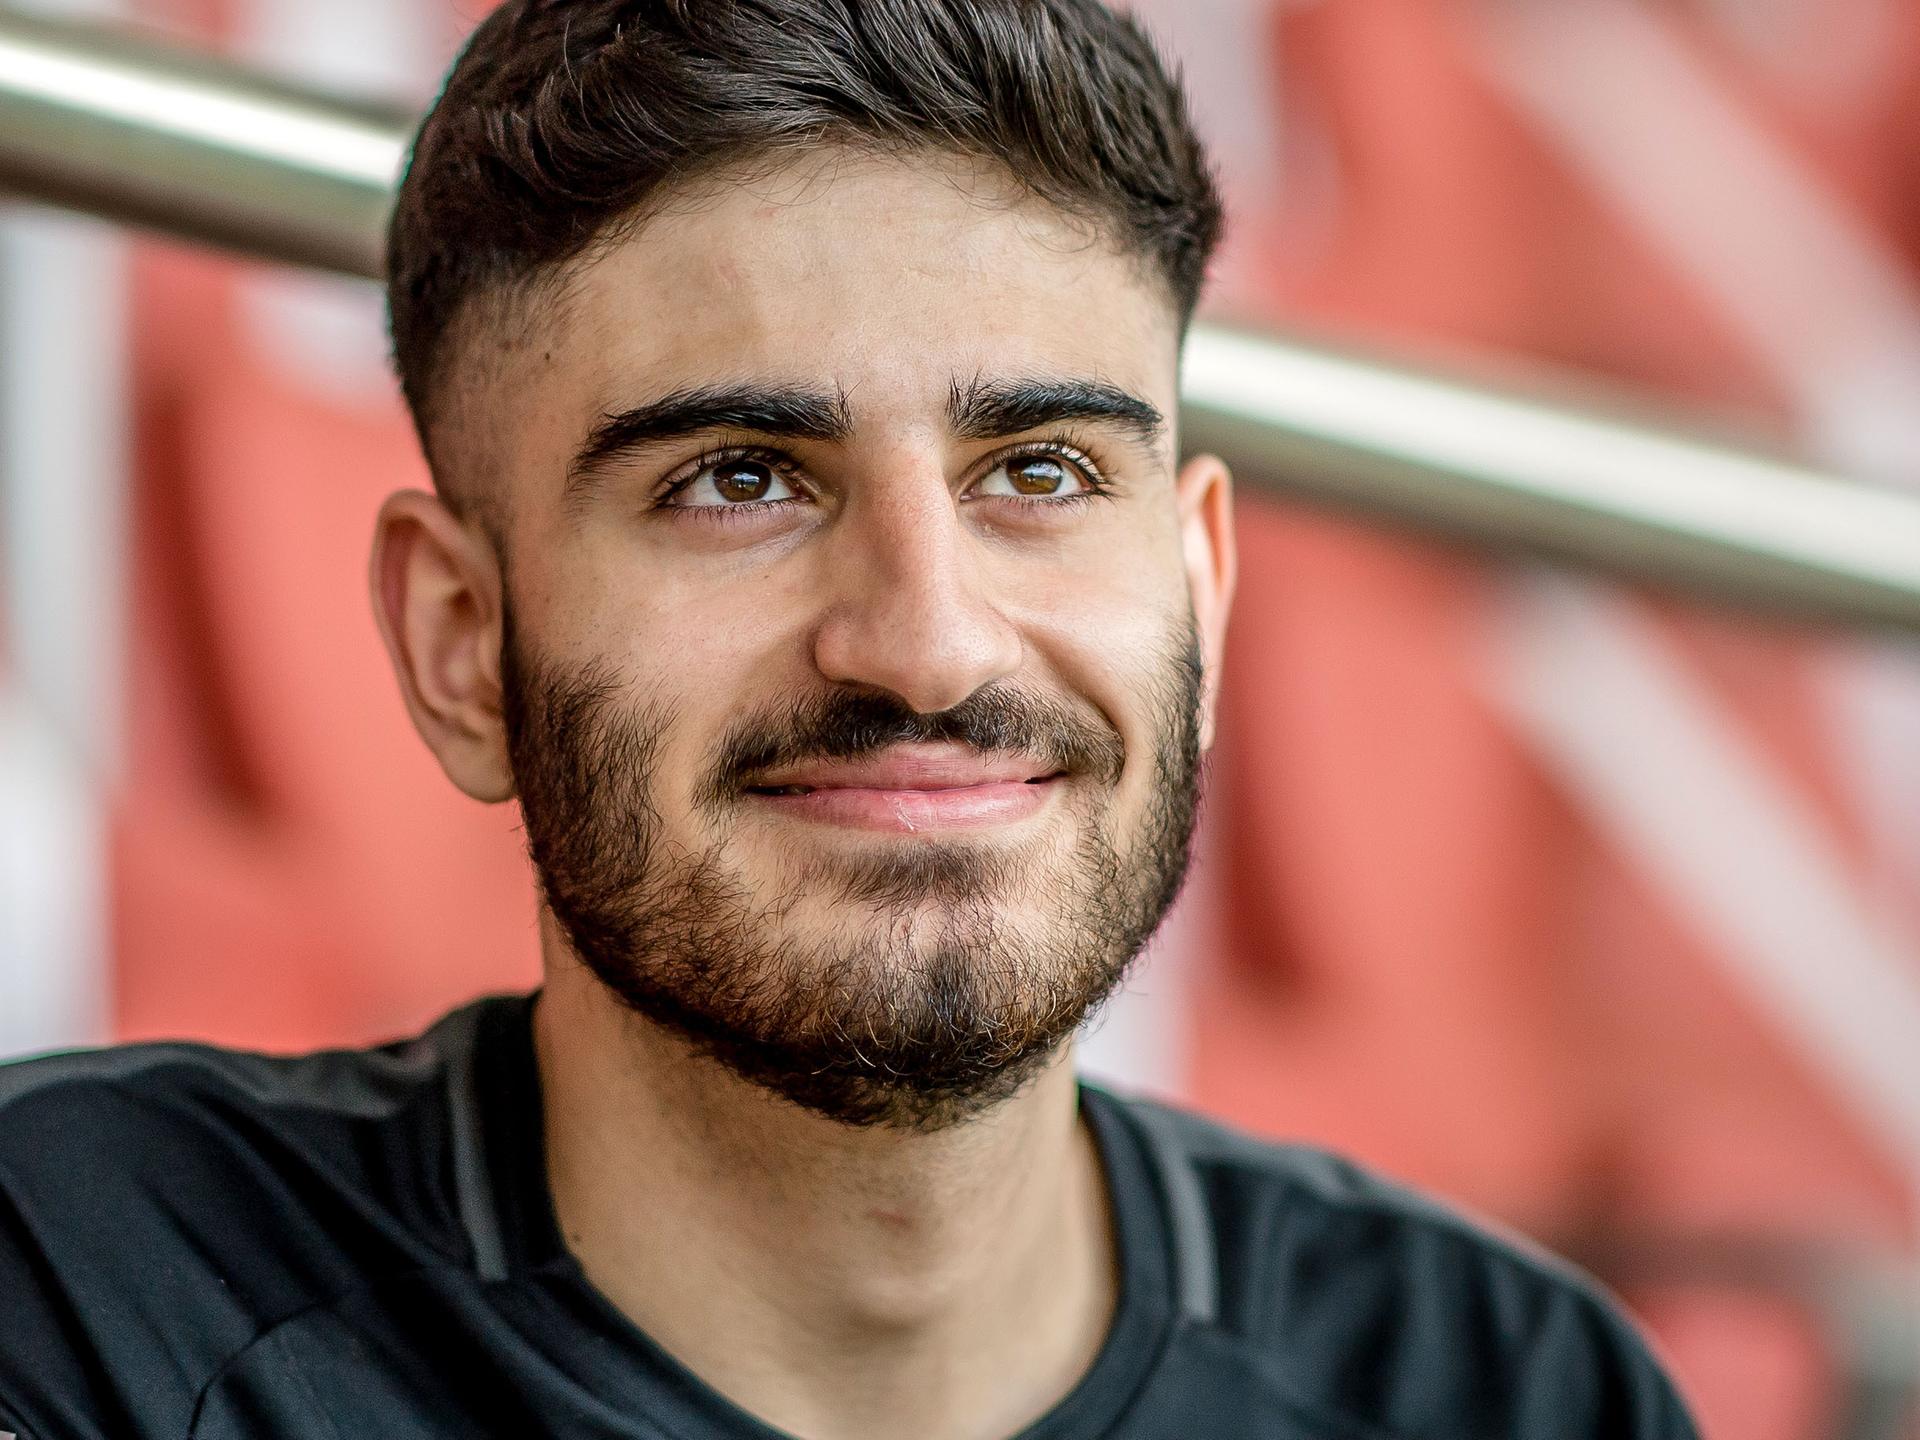 Der E-Sportler Umut Gültekin sitzt in einem leeren Stadion und blickt lächelnd in die Kamera.